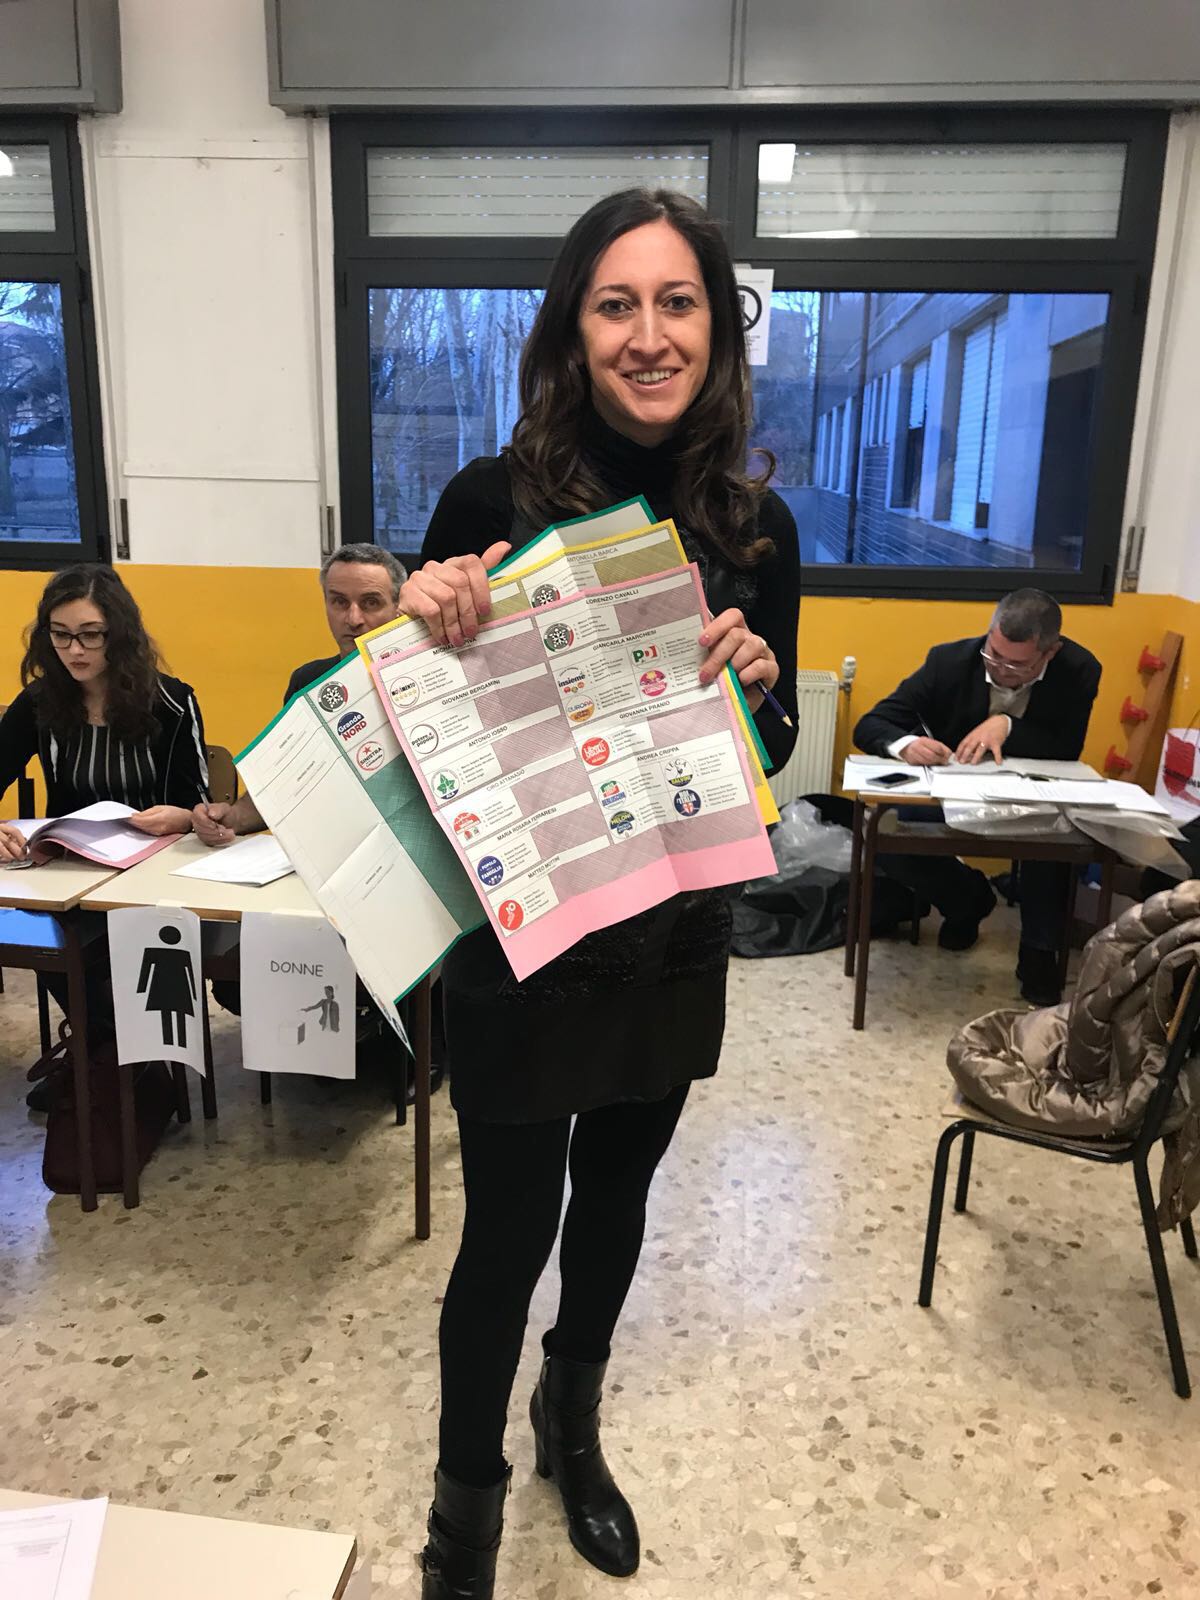 Paola Romeo di Limbiate candidata alle regionali per Forza Italia